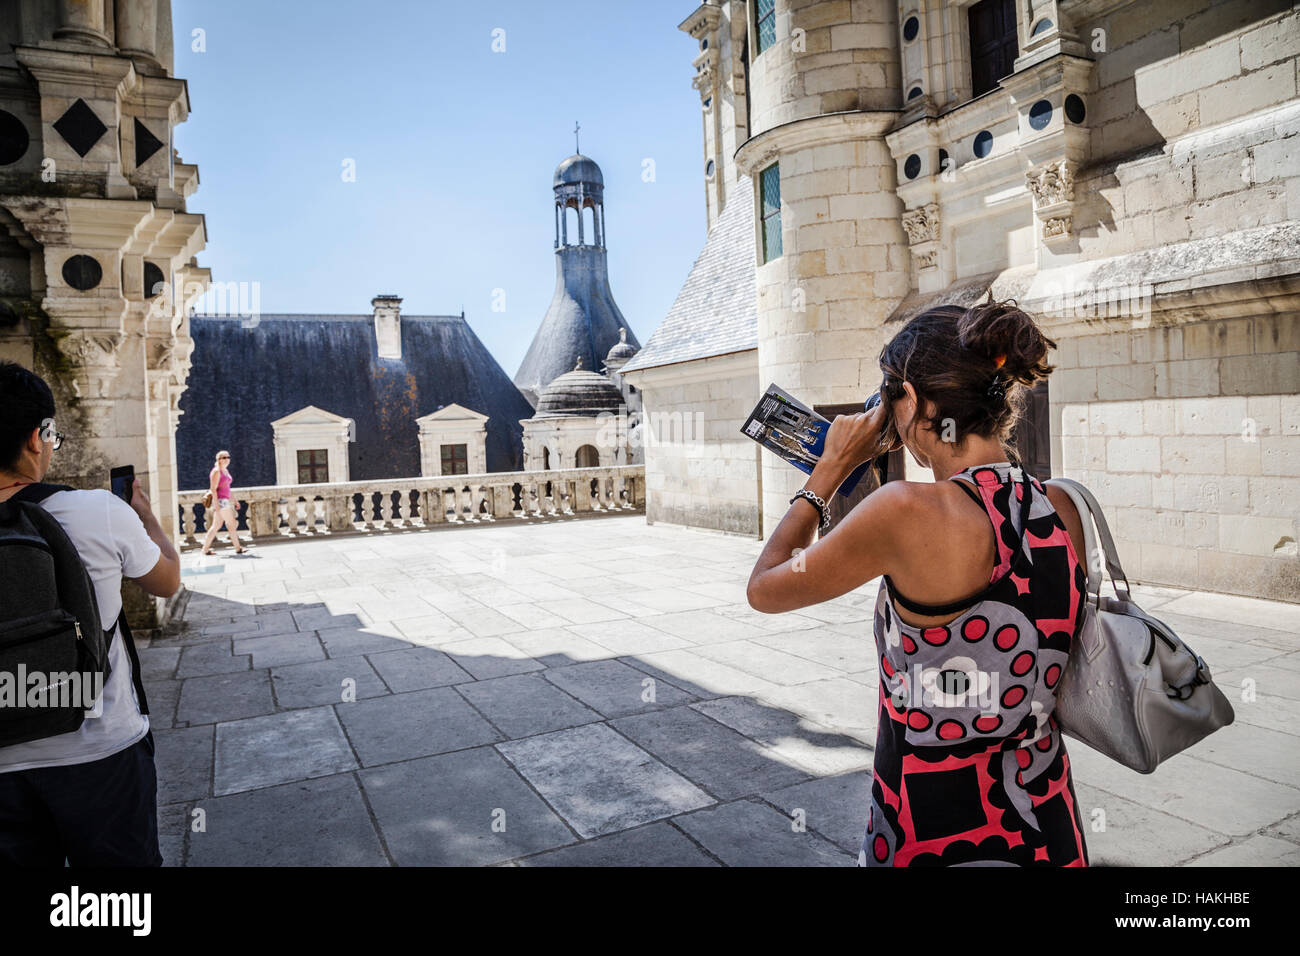 Los turistas haciendo fotos no identificados cerca del Castillo Chambord Foto de stock